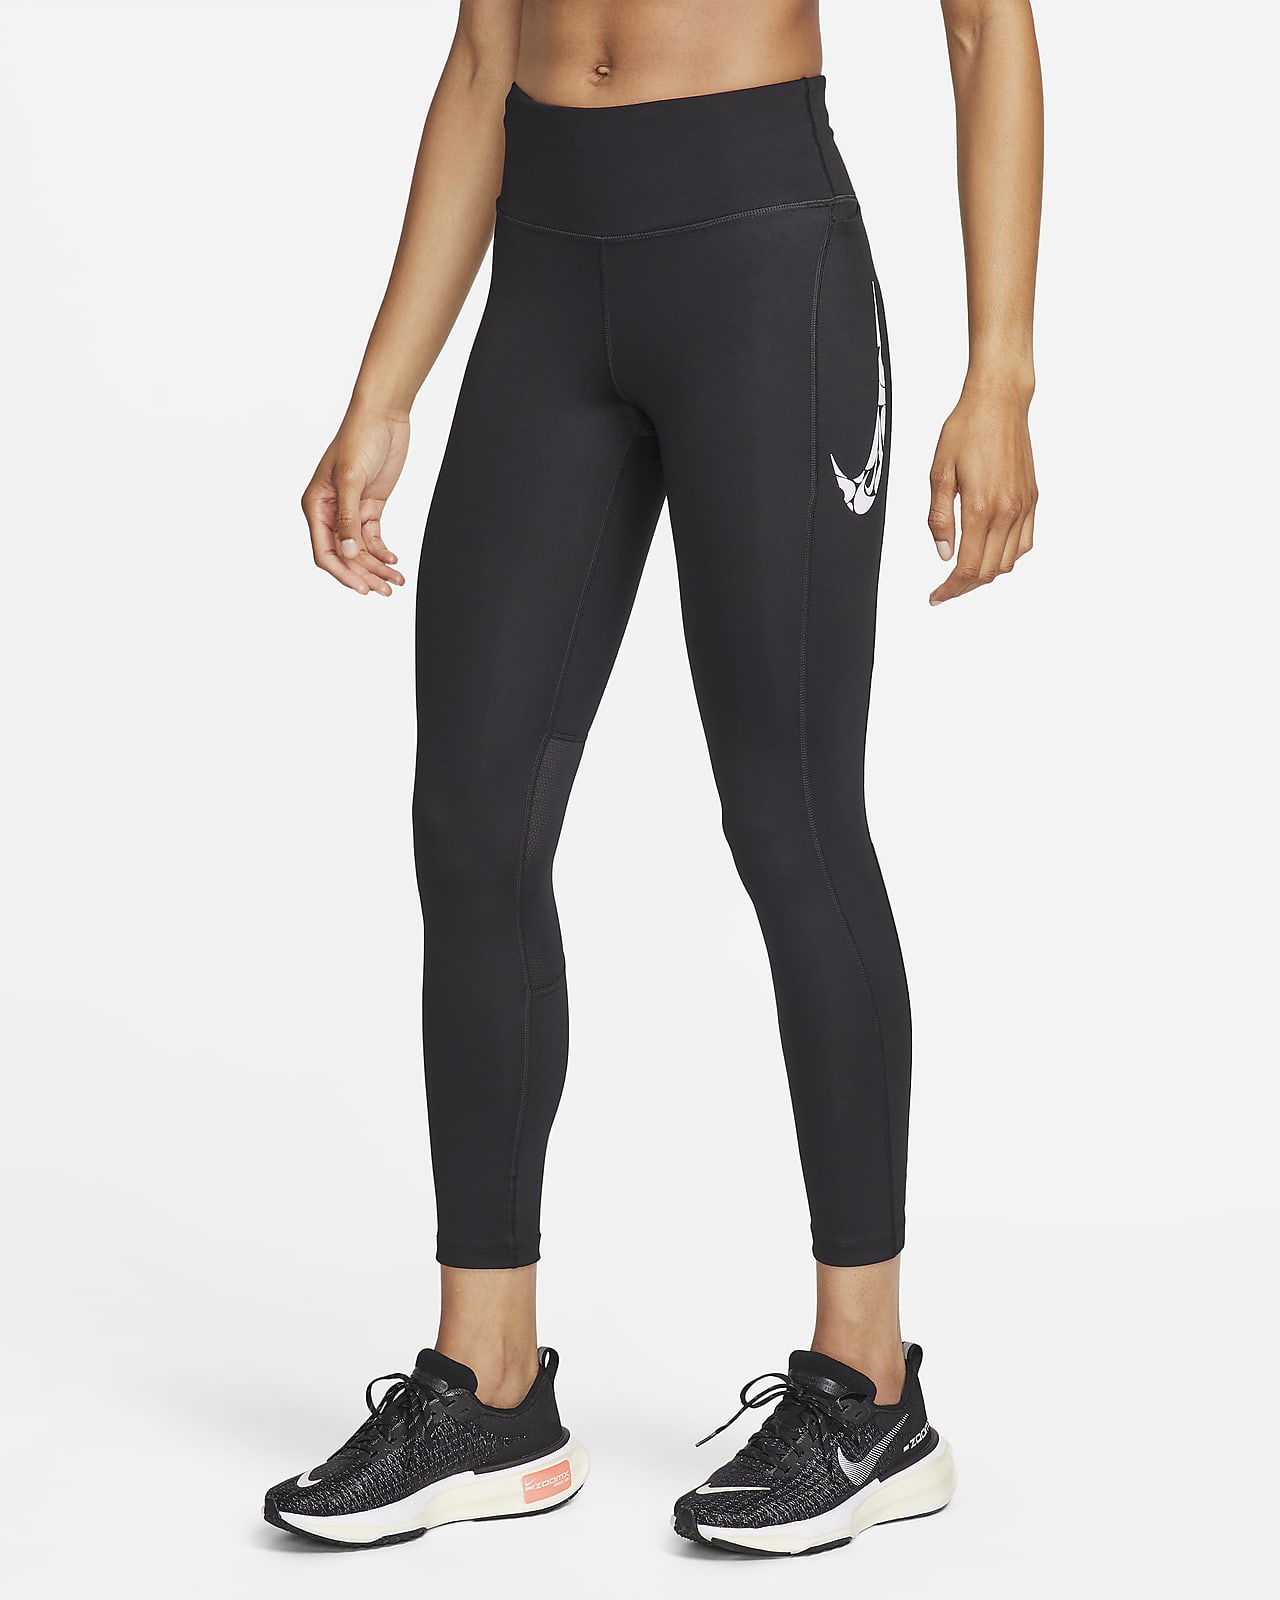 Nike Fast Normal Belli 7/8 Cepli Kadın Koşu Taytı